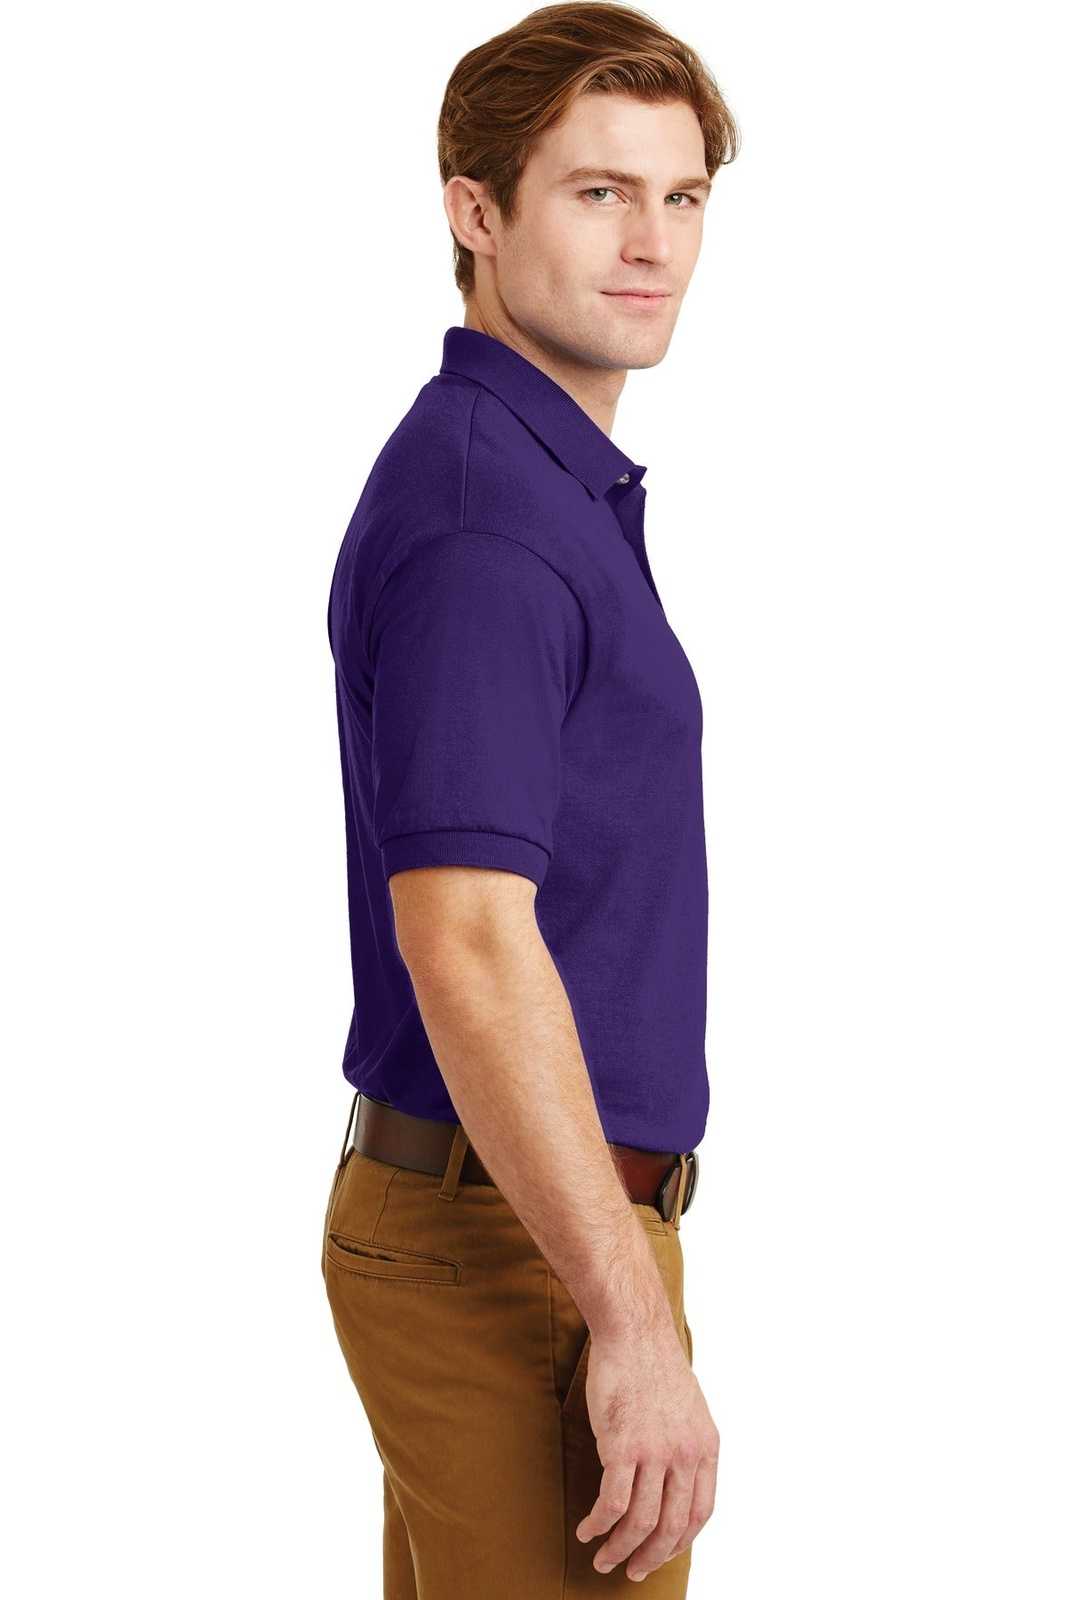 Gildan 8800 Dryblend 6-Ounce Jersey Knit Sport Shirt - Purple - HIT a Double